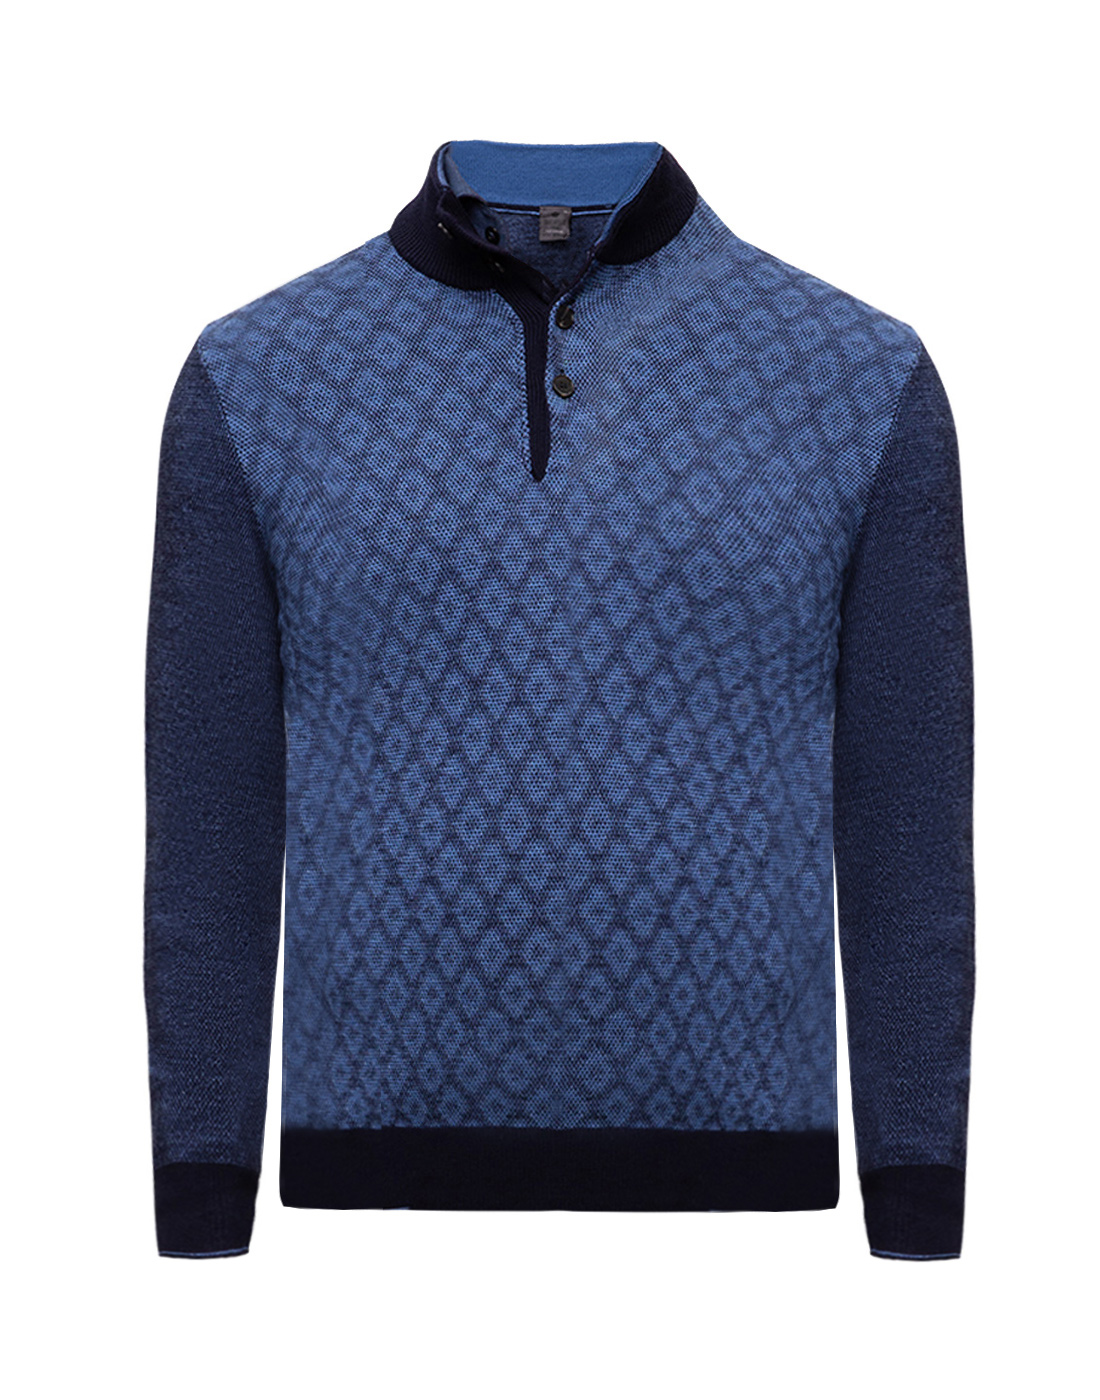 Мужской синий шерстяной свитер Dalmine S712021 D203-1